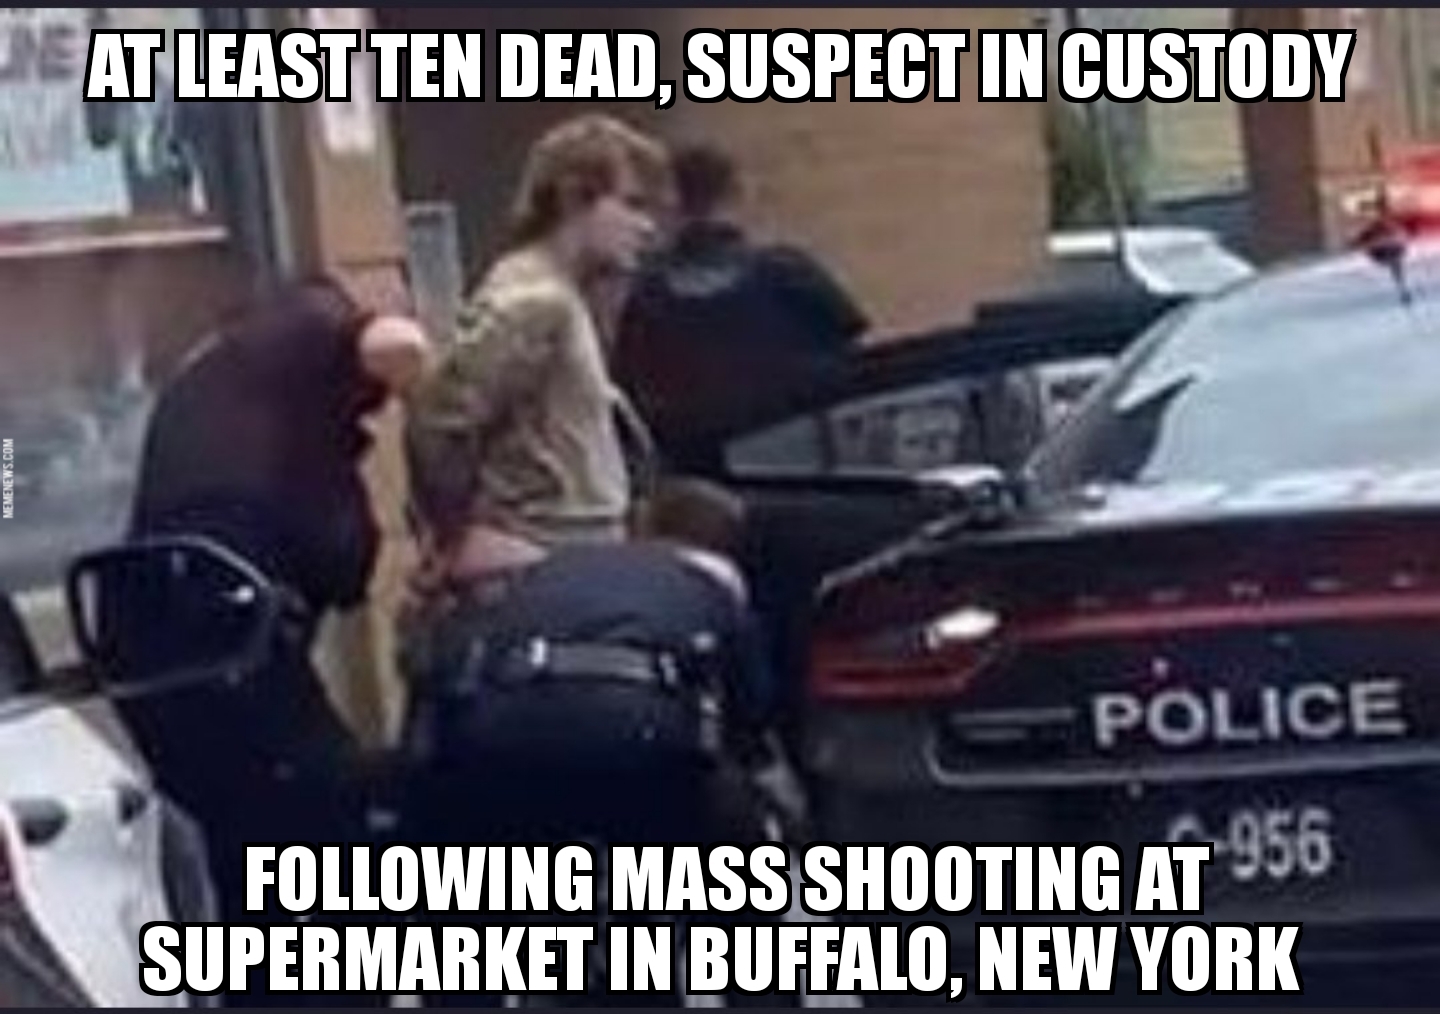 Buffalo supermarket shooting